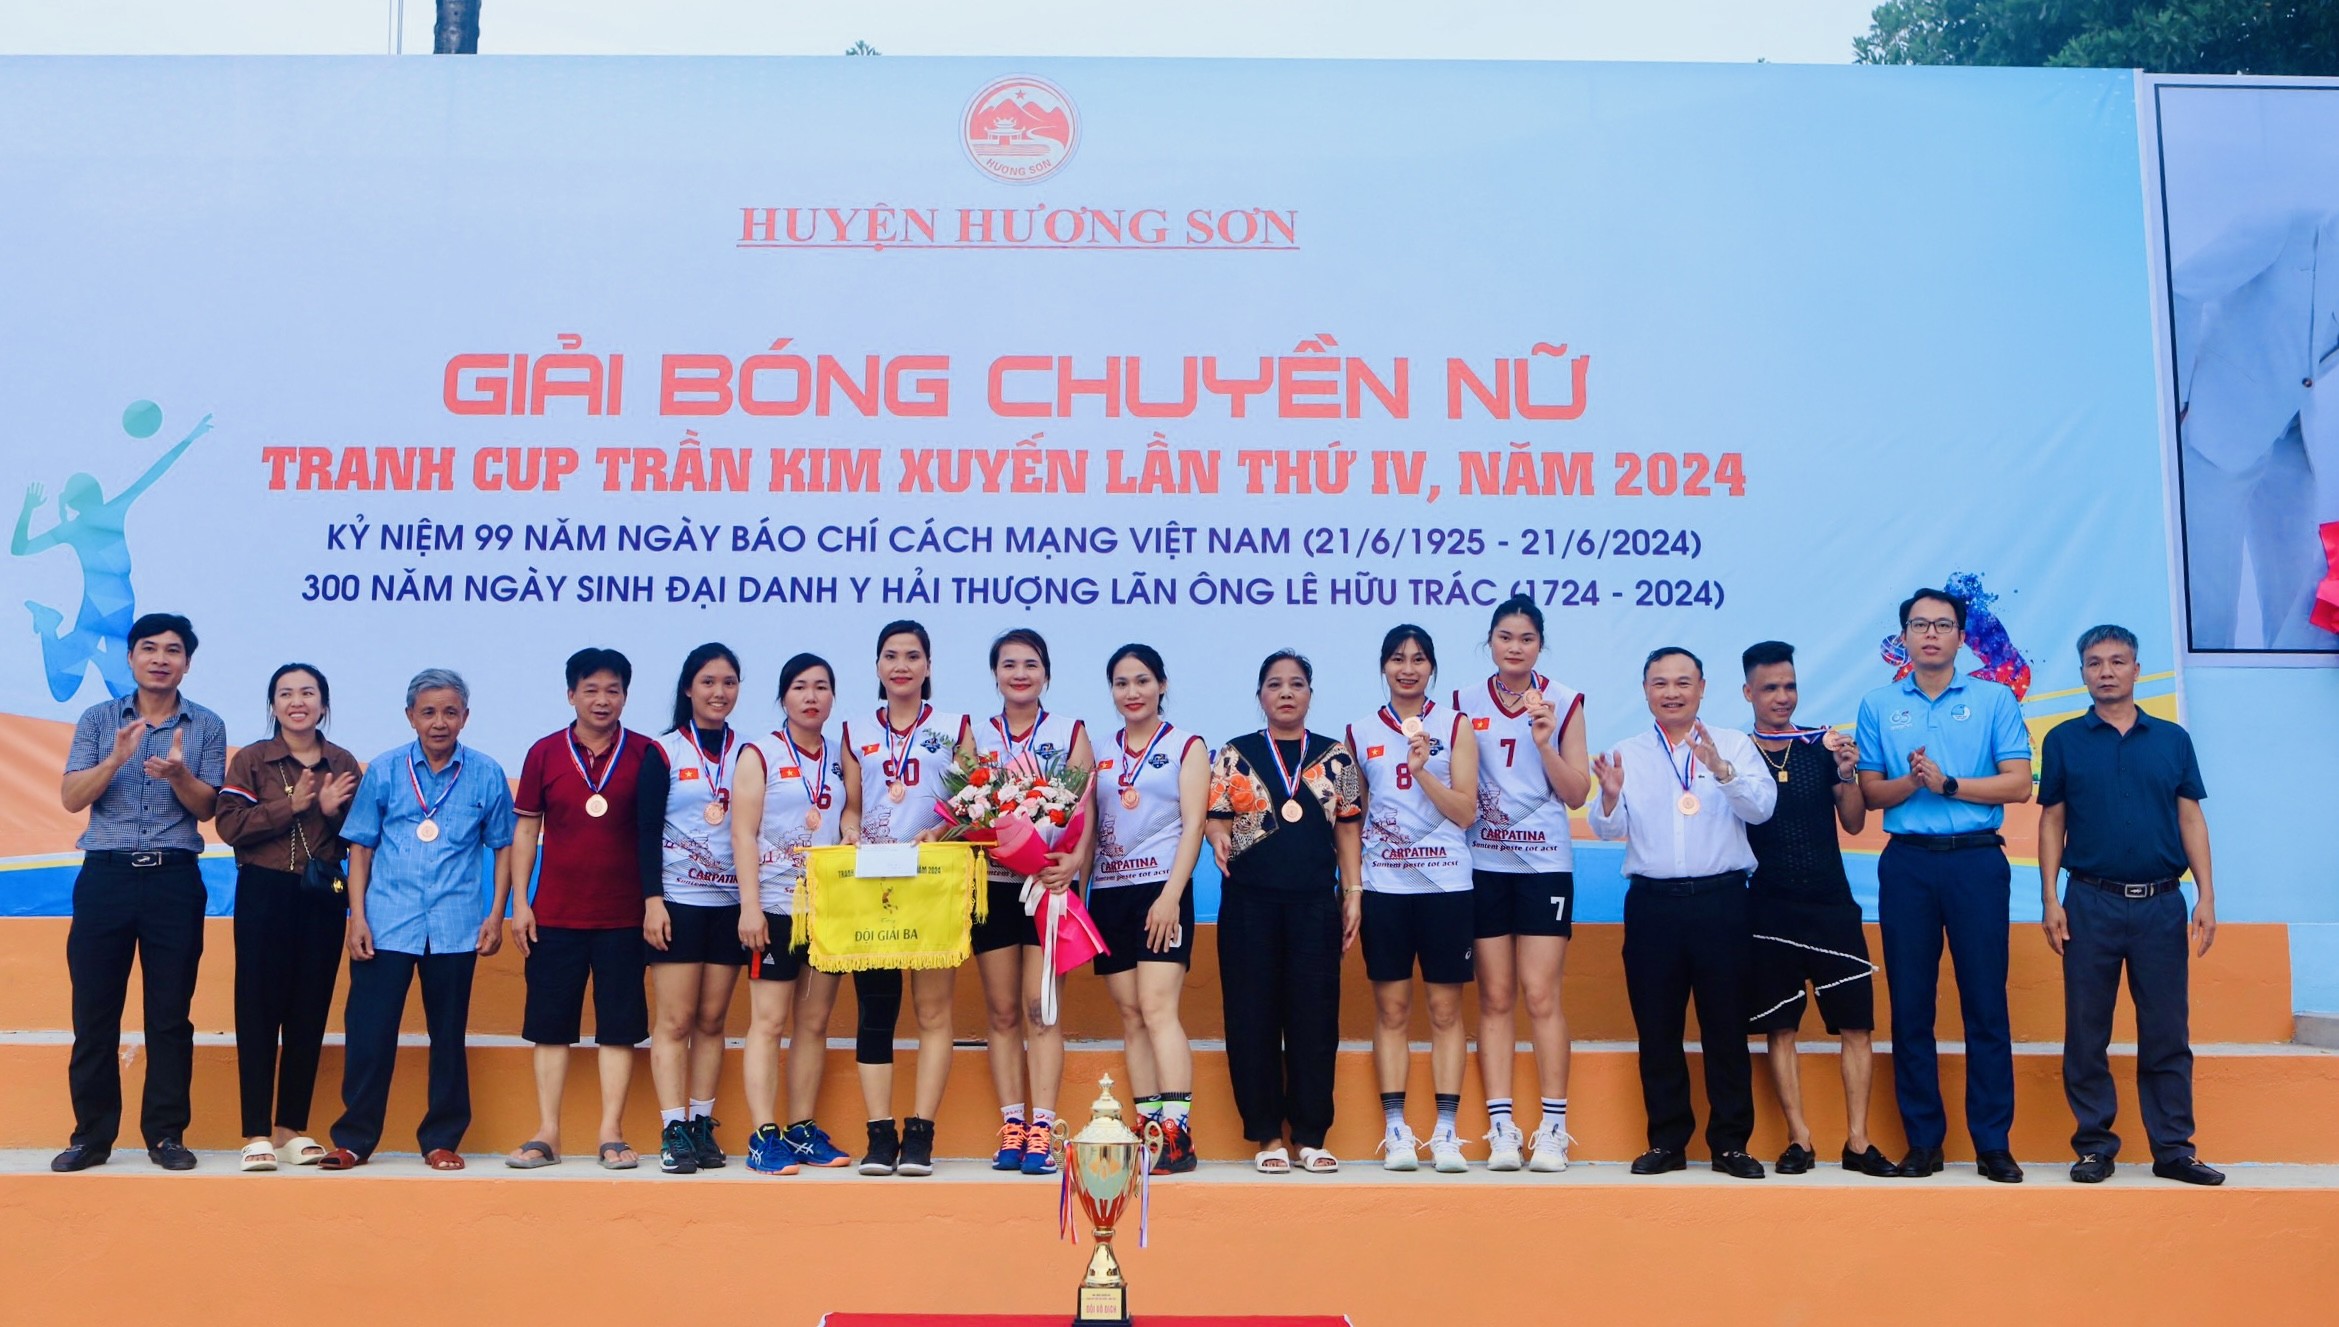 Thể thao - Hà Tĩnh: Sức nóng tại giải bóng chuyền tranh cúp Trần Kim Xuyến (Hình 5).